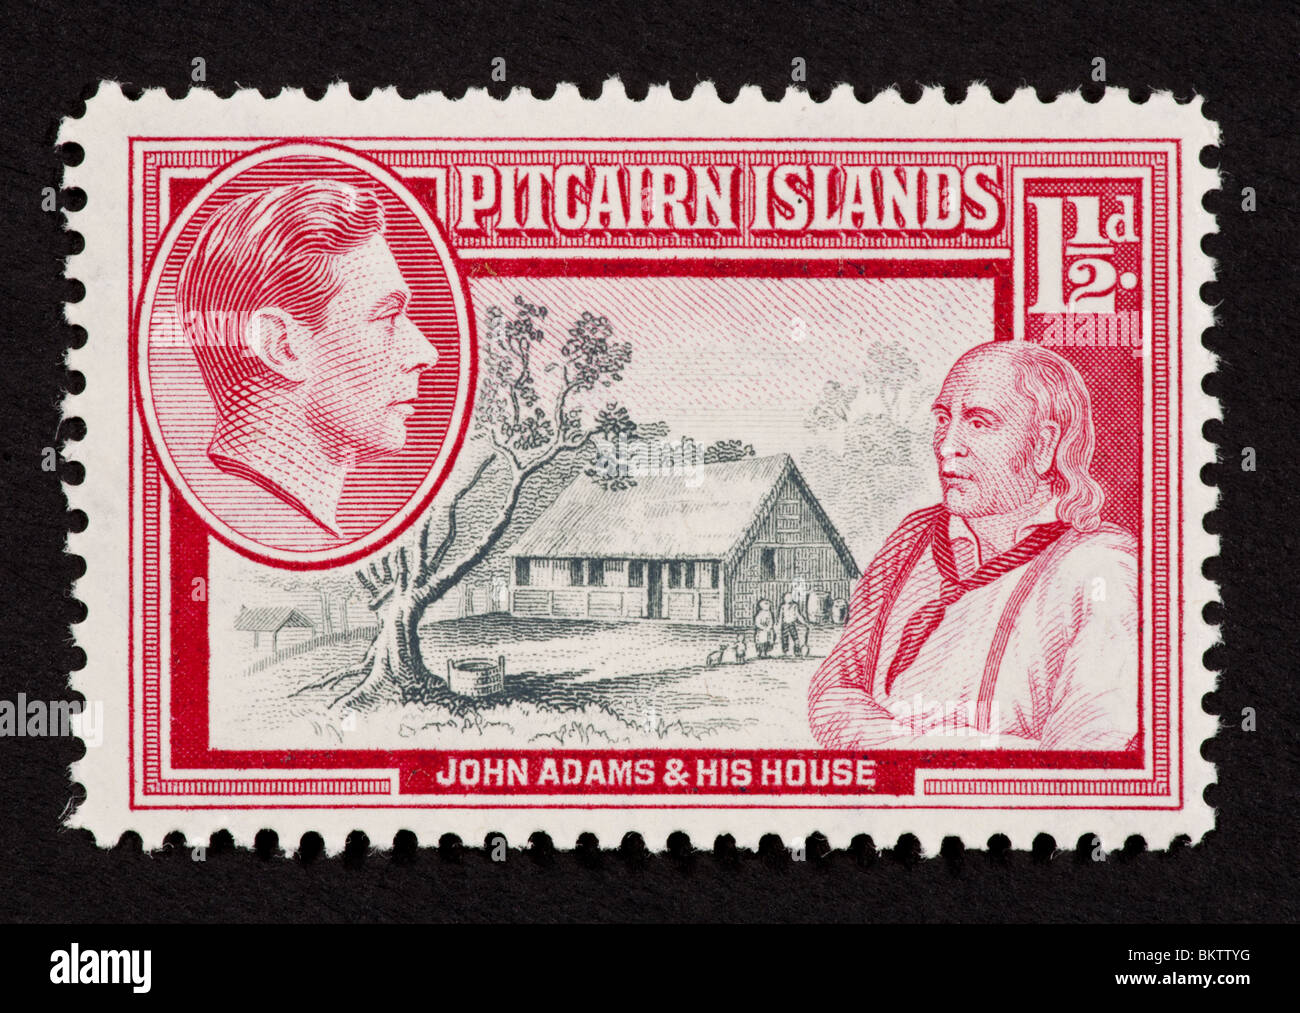 Francobollo da Isole Pitcairn raffigurante John Adams, la sua casa e George VI. Foto Stock